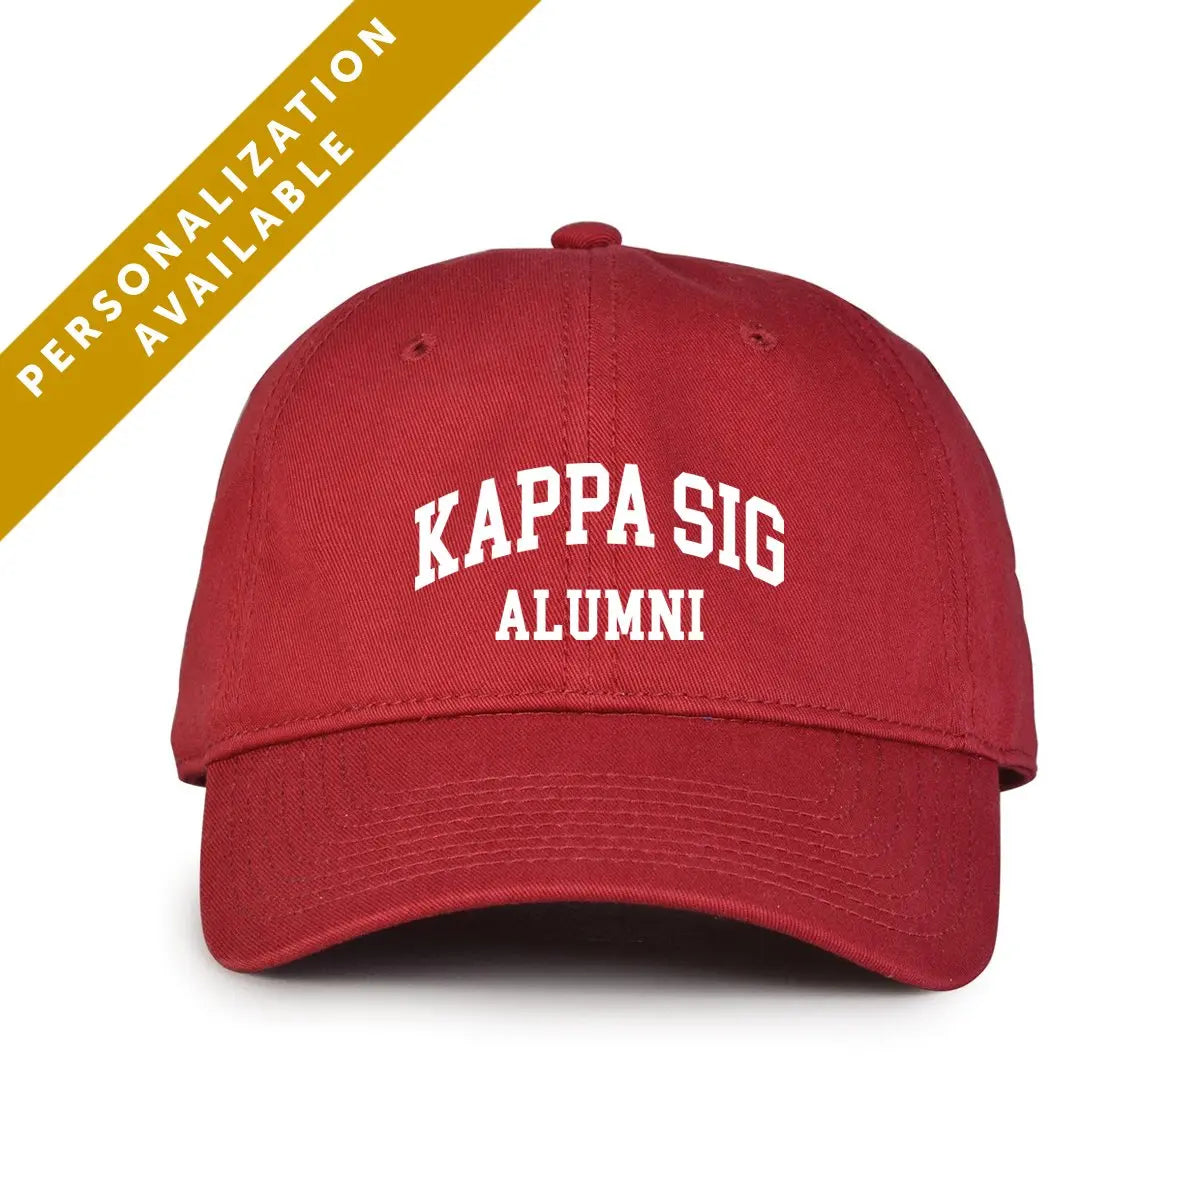 Kappa Sig Alumni Cap - Kappa Sigma Official Store